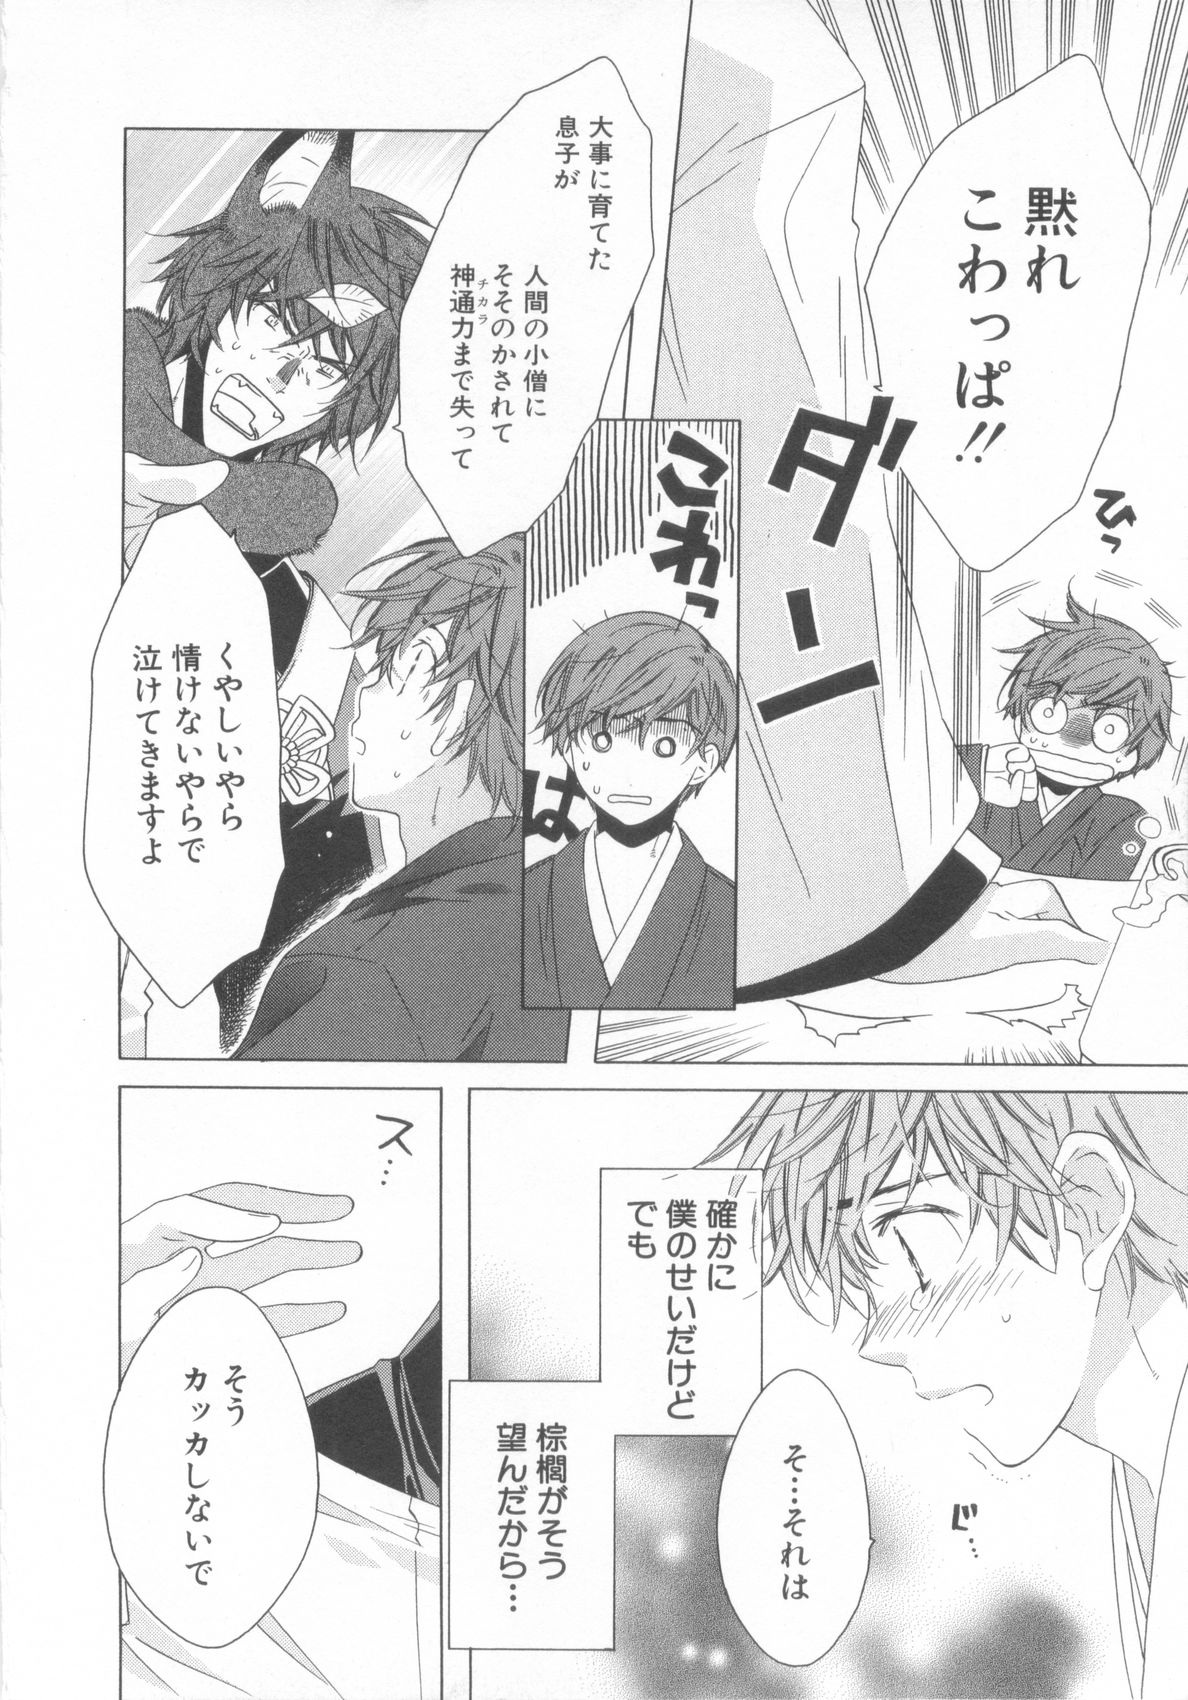 [Anthology] Shota Tama Vol. 3 page 34 full